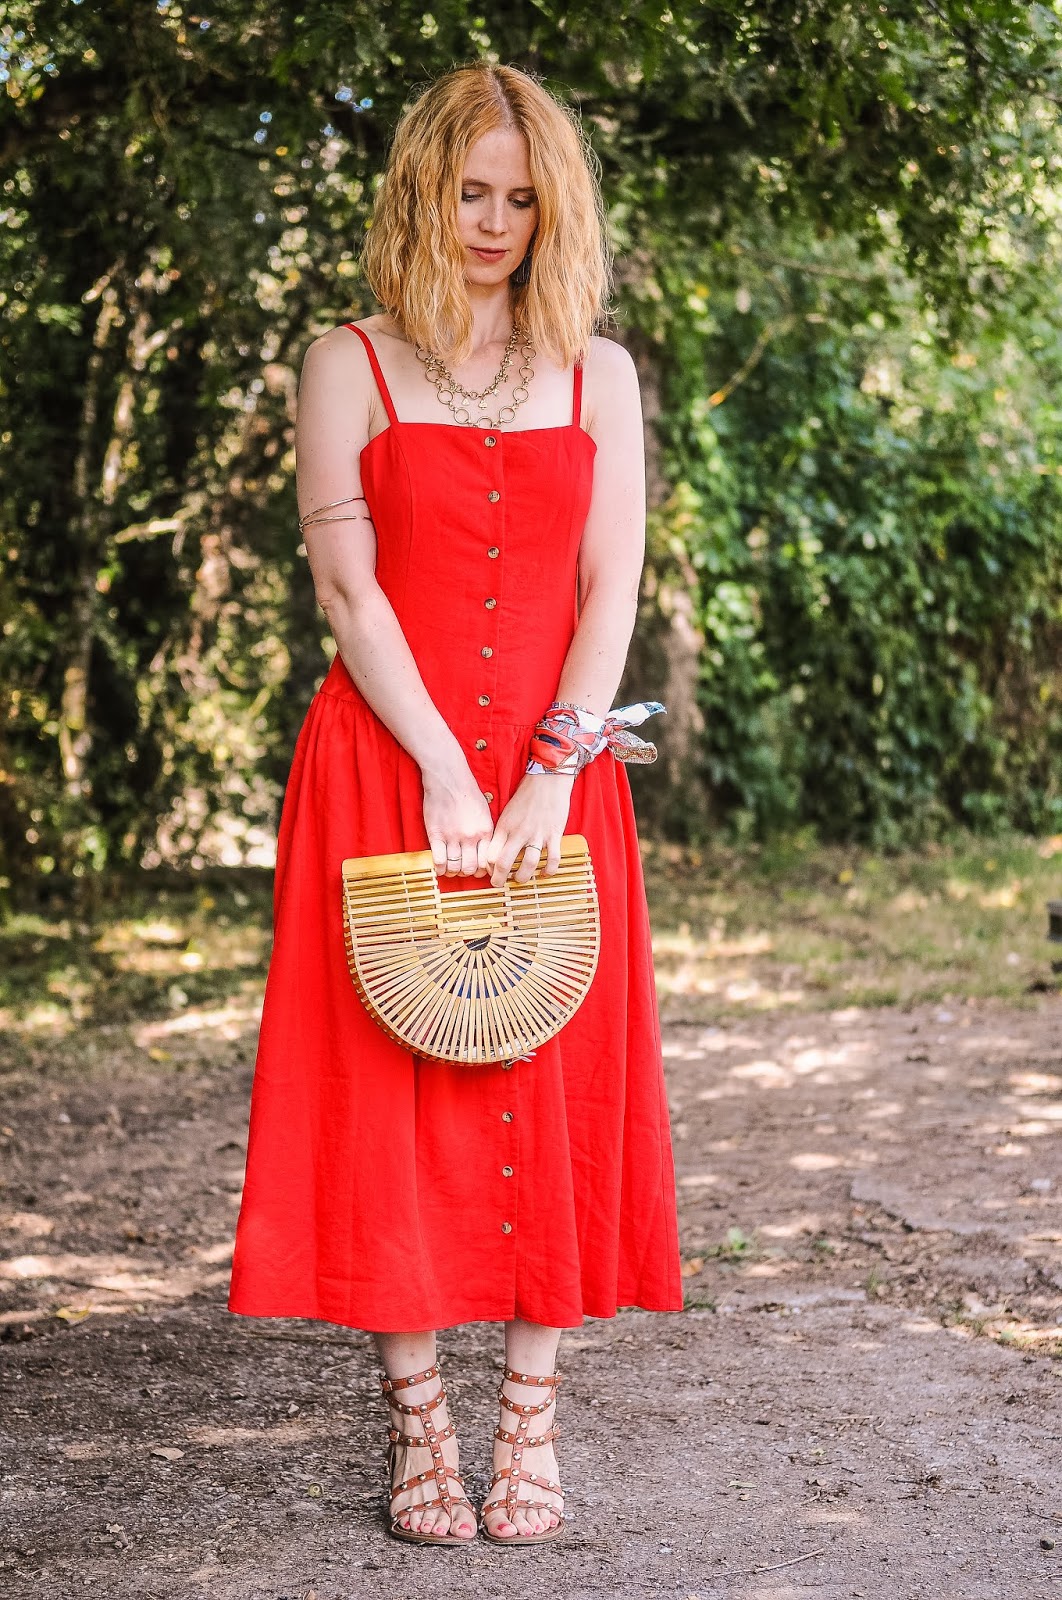 Vestido rojo midi con botones - Ingrid Hughes - Blog de moda, looks, belleza, y viajes